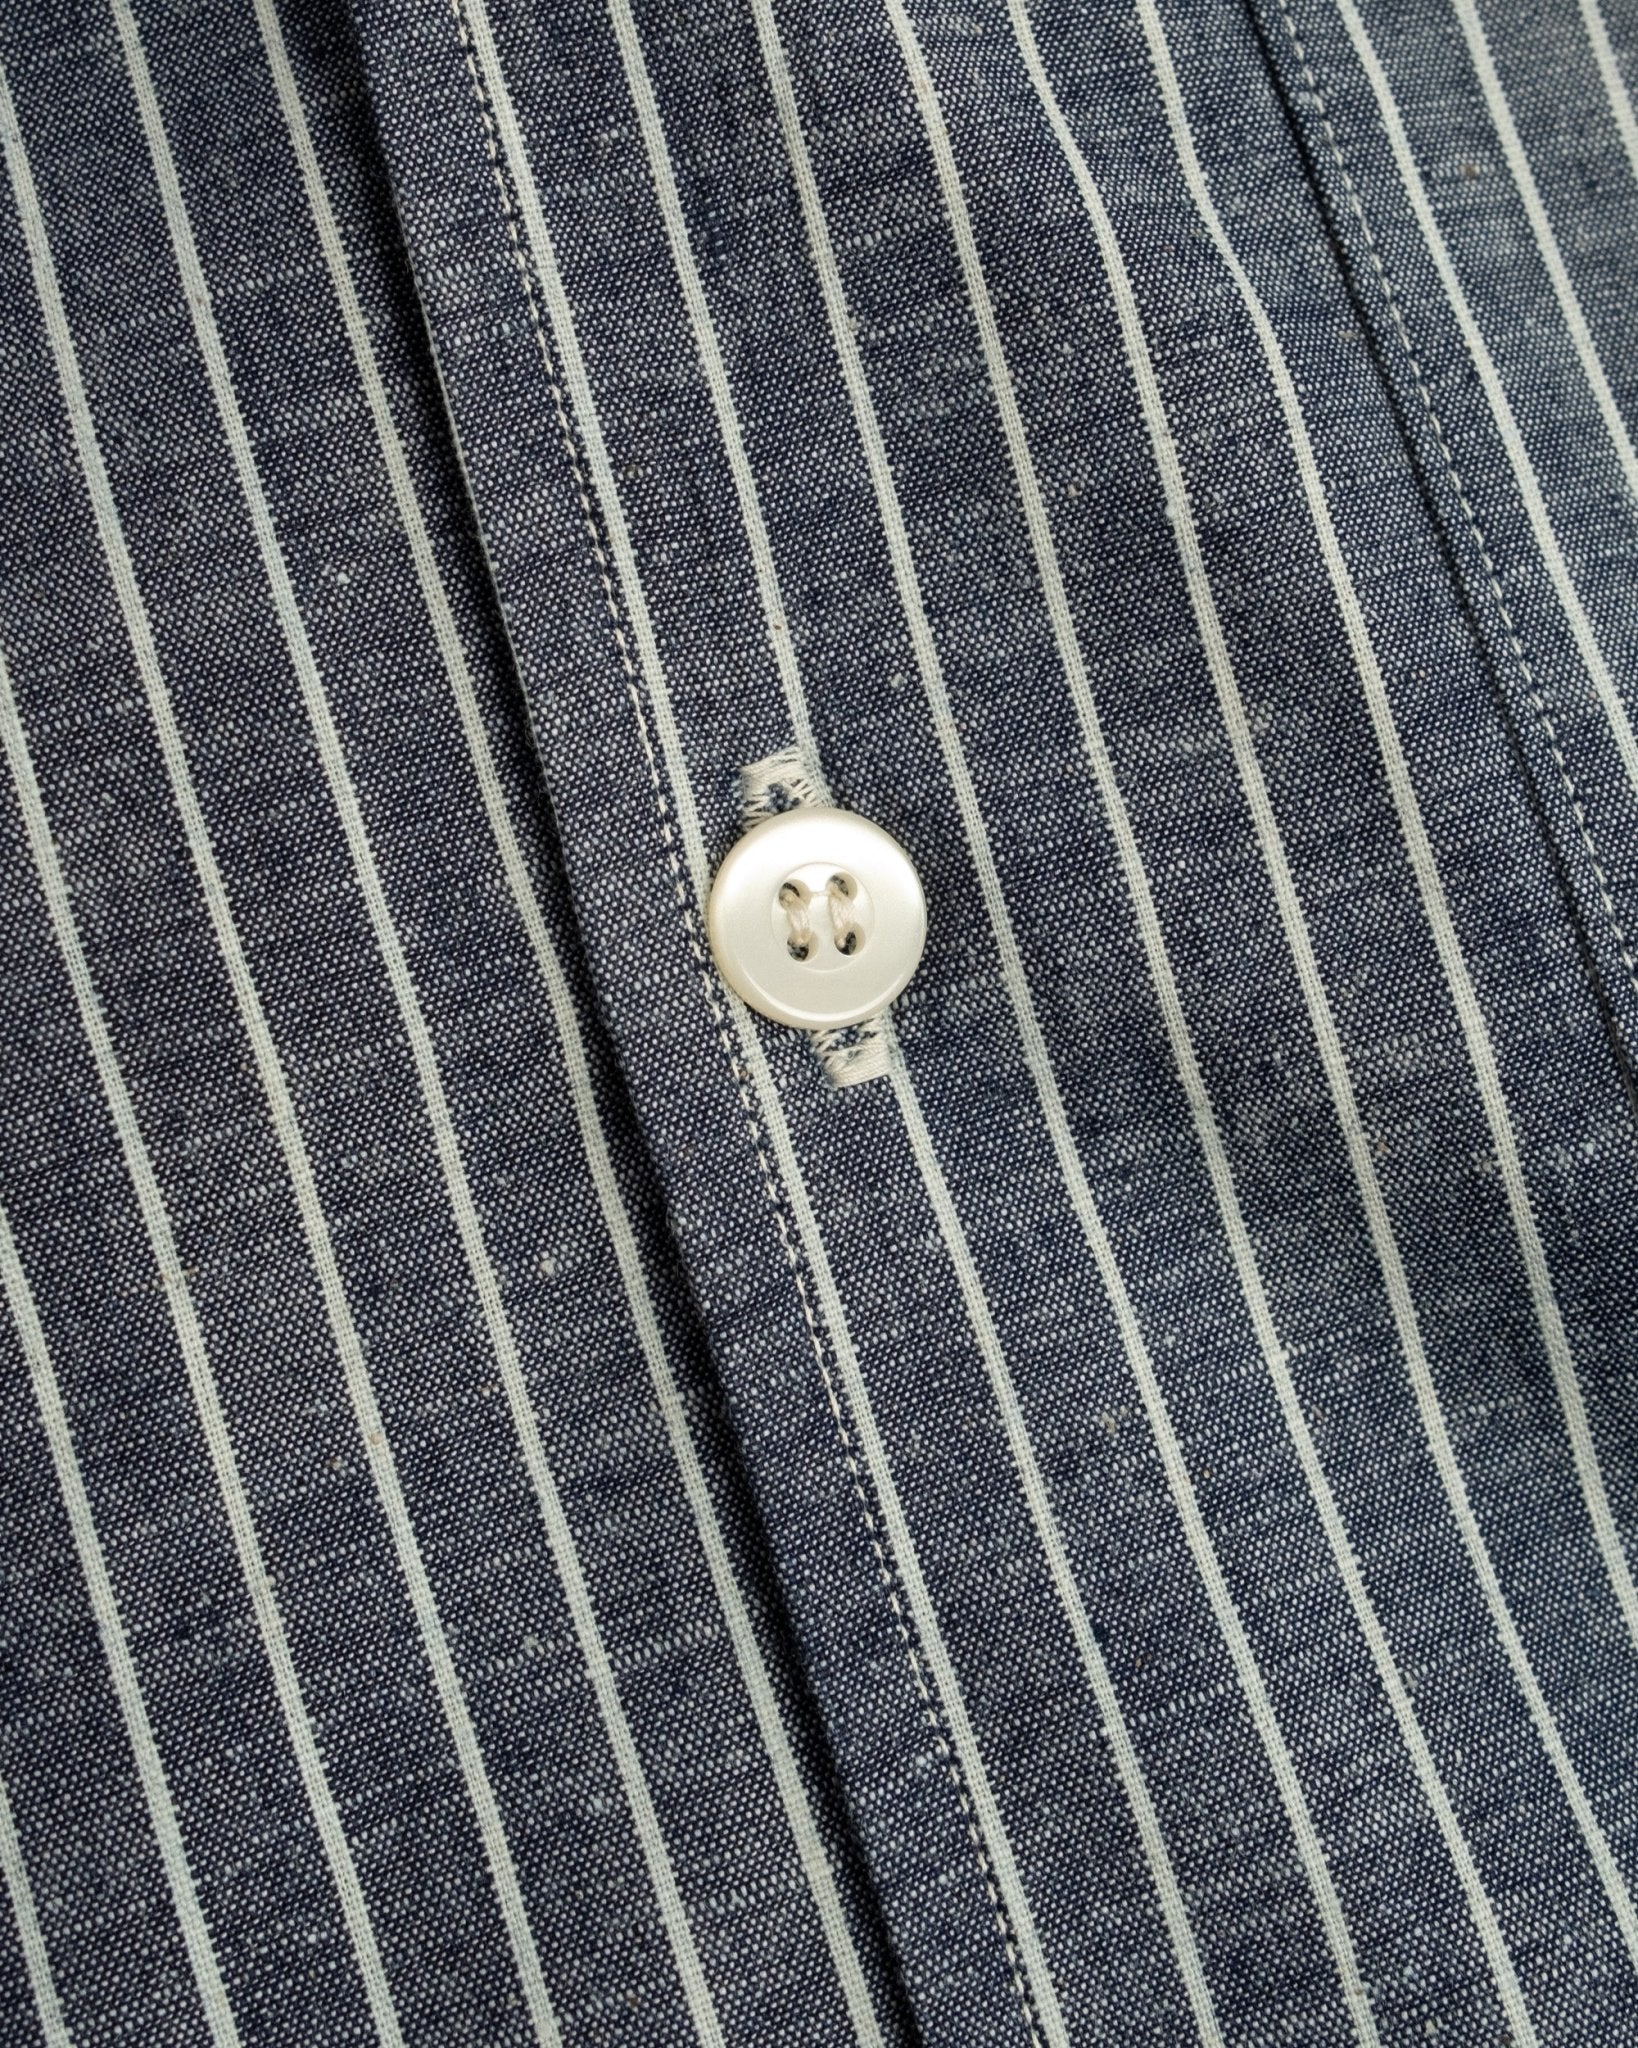 S/S Open Collar Shirt Indigo Stripe - Meadow